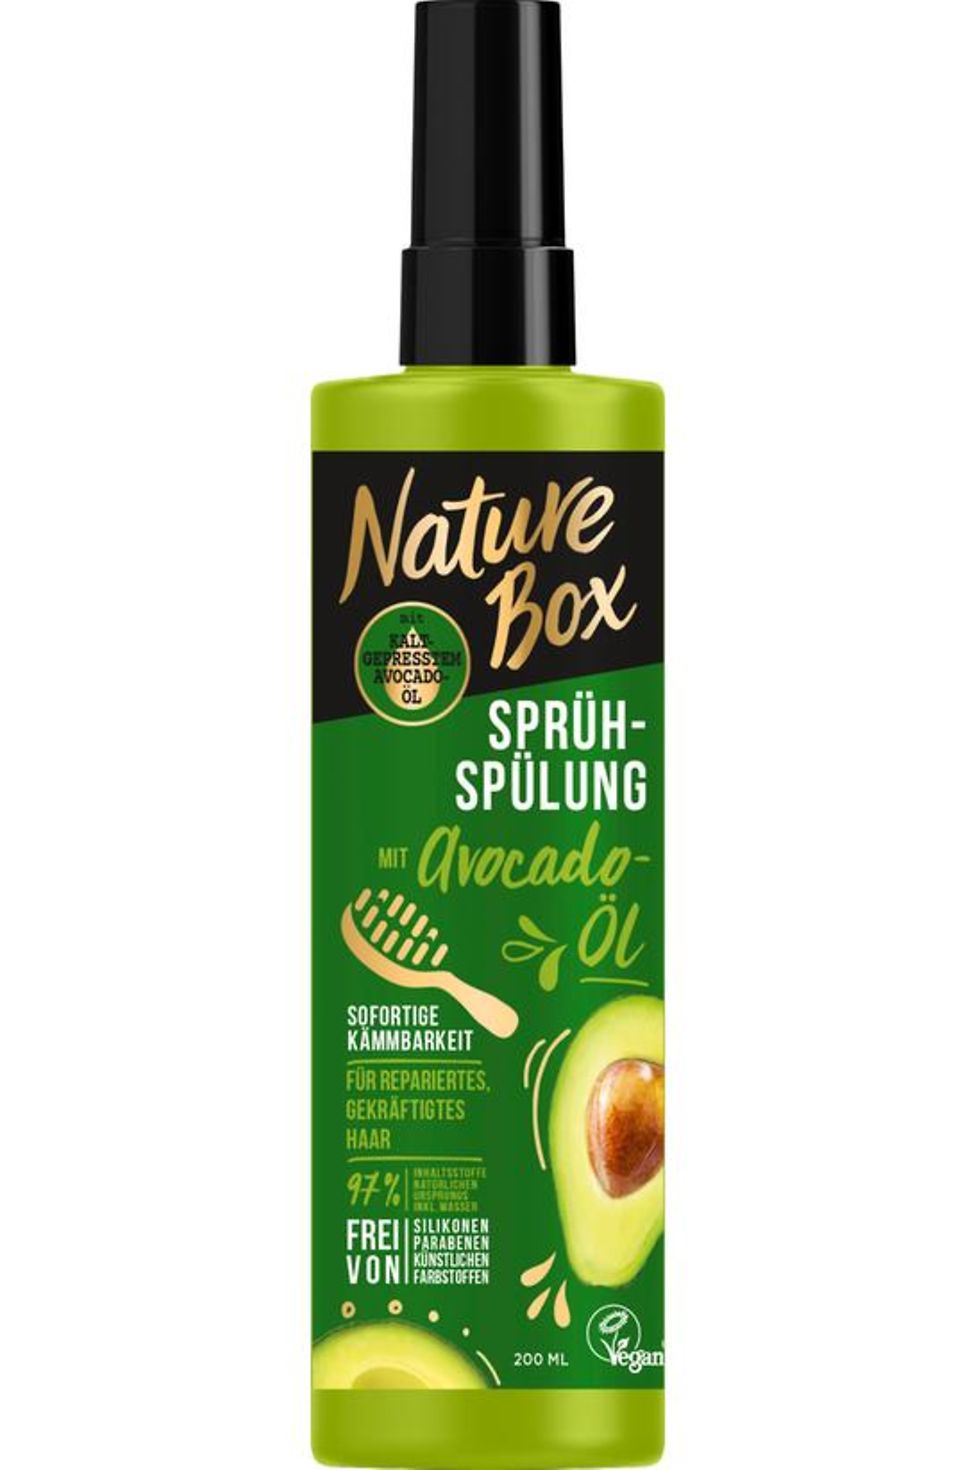 
Nature Box Sprüh-Spülung mit kaltgepresstem Avocado-Öl